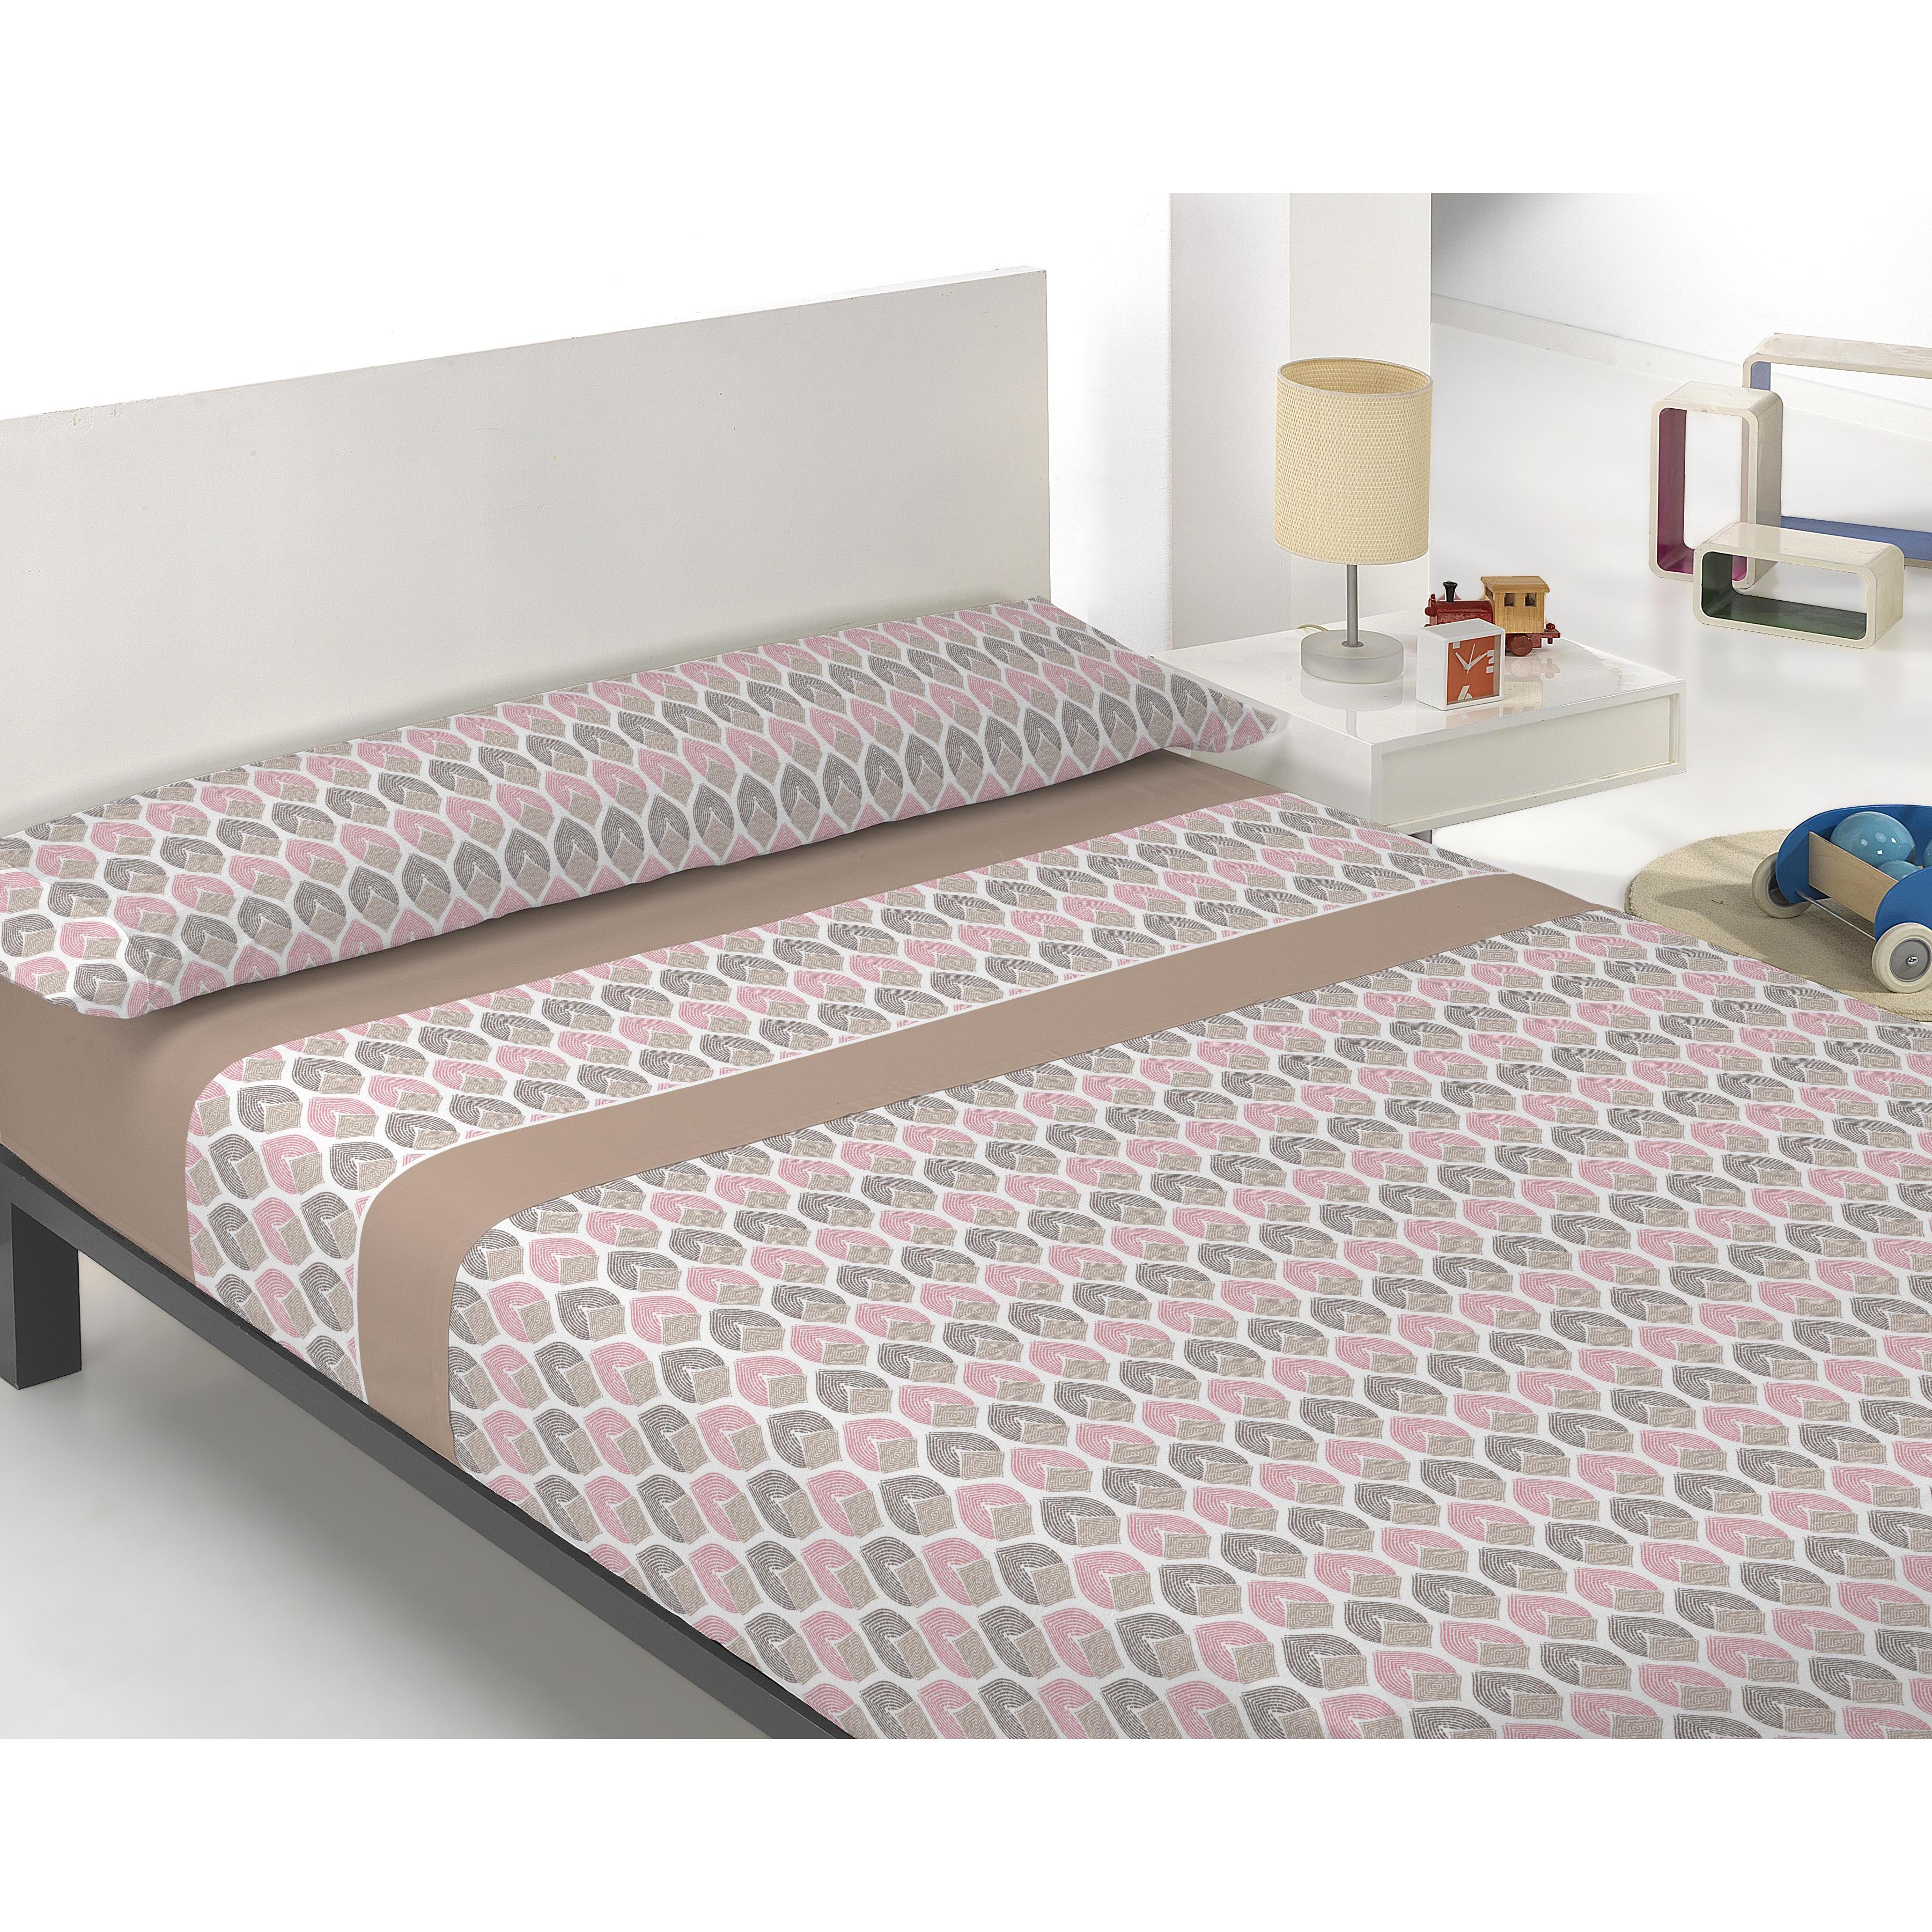 Purpura Home - Purpura Home - Juego Sábanas Estampadas de Verano/Entretiempo incluye 3 piezas  para cama desde 90 hasta 150, 100% poliéster (MICROFIBRA) Tejido estampado y suaves. SABANAS HOTEL